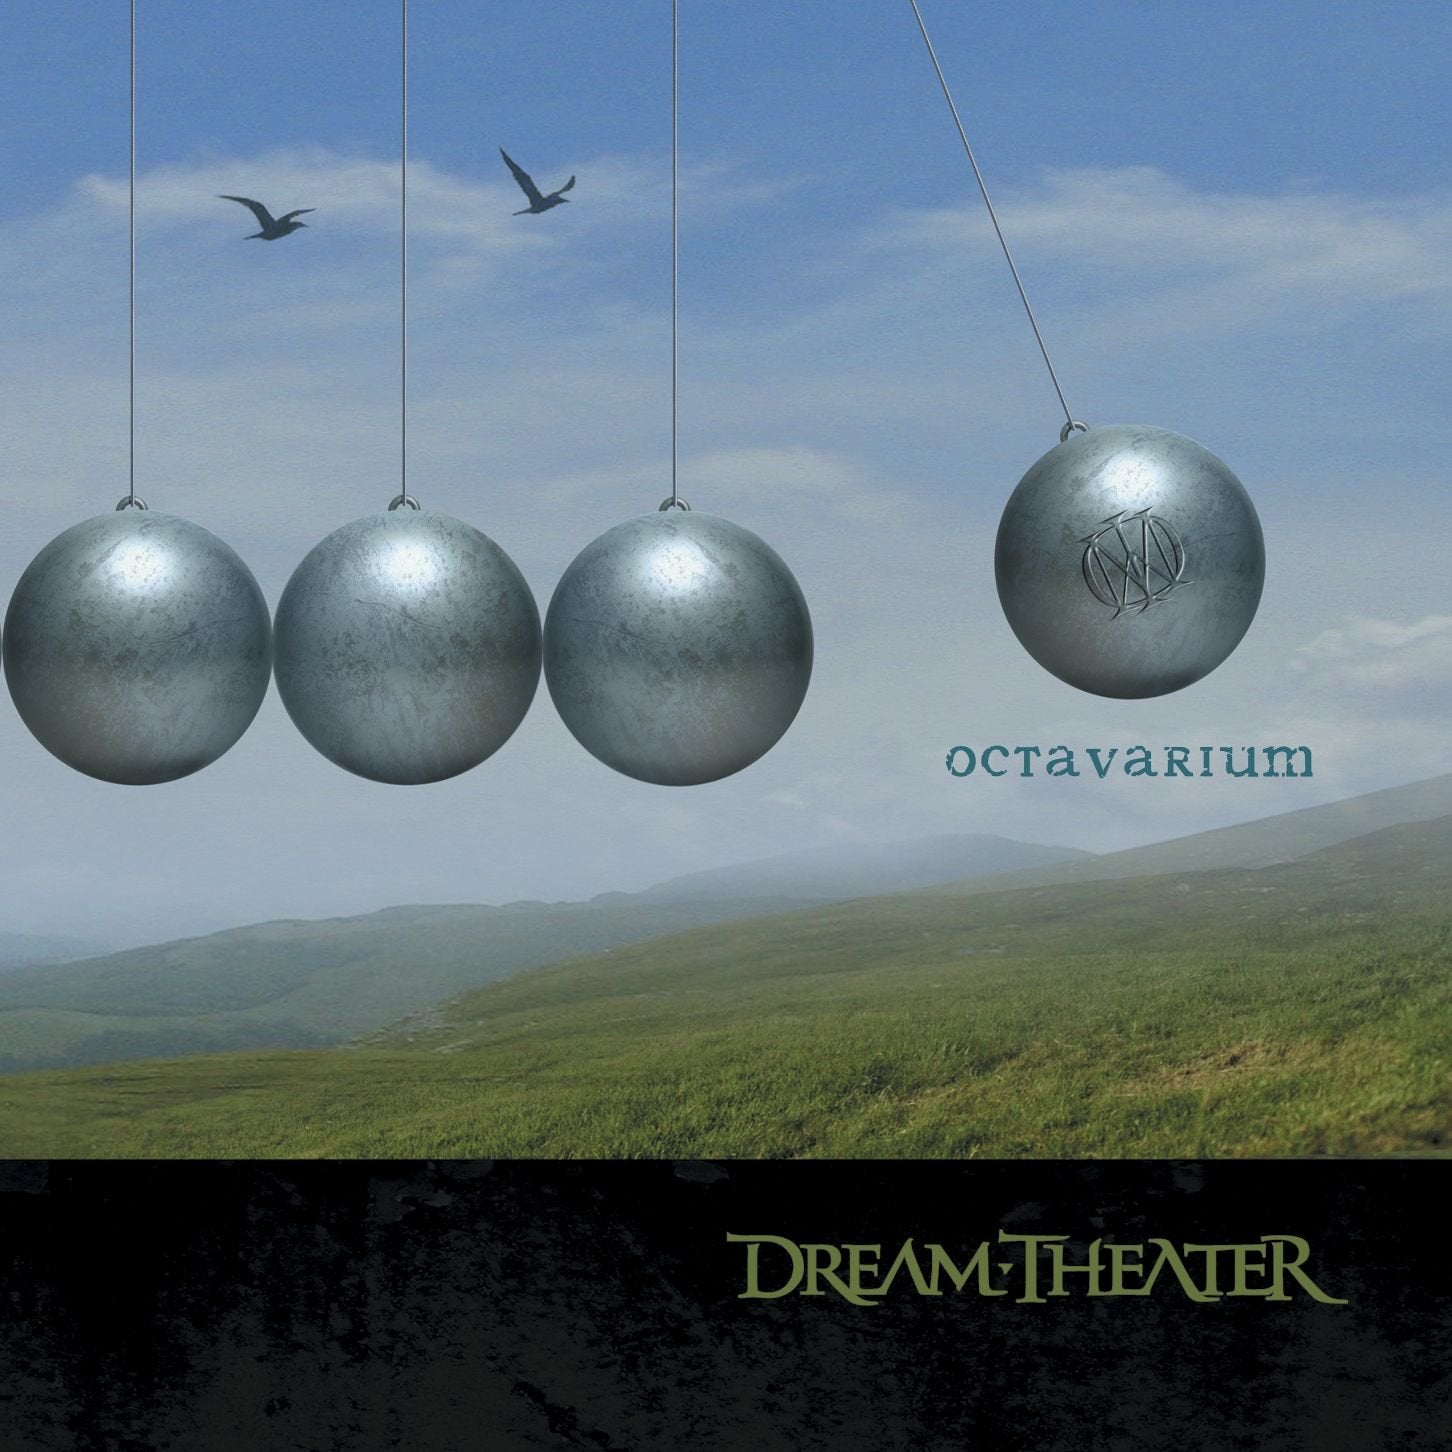 Dream Theater - Octavarium (2013 2LP gatefold reissue) - Vinyl - New